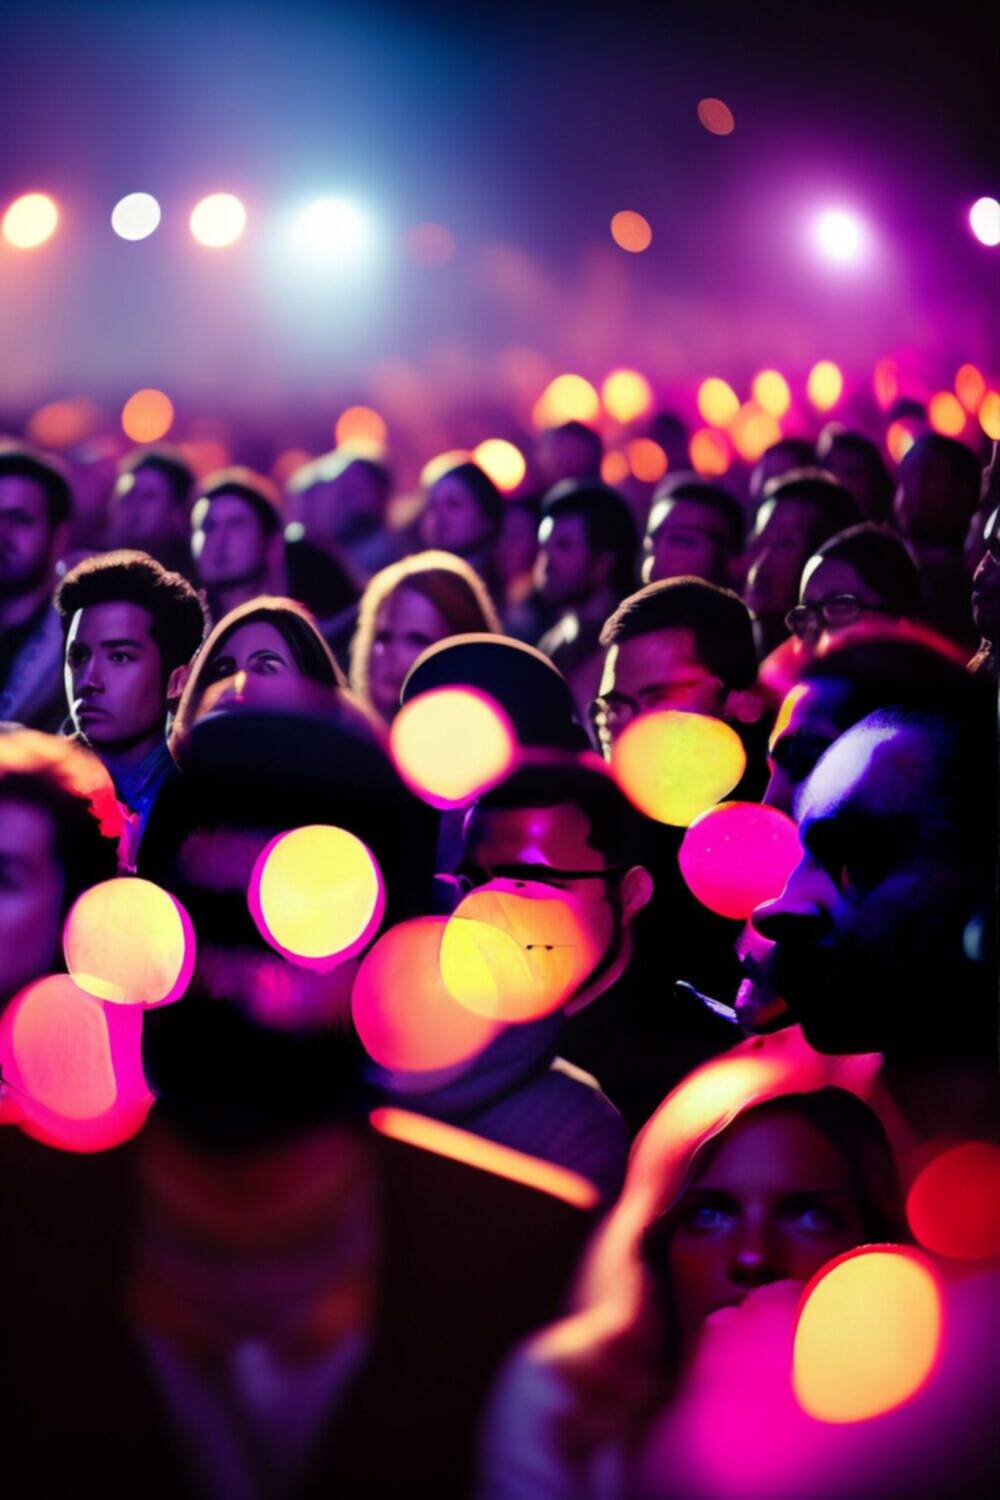 Крупнейшим в мире музыкальным фестивалем является фестиваль Гластонбери в Великобритании, привлекающий более 200 000 посетителей